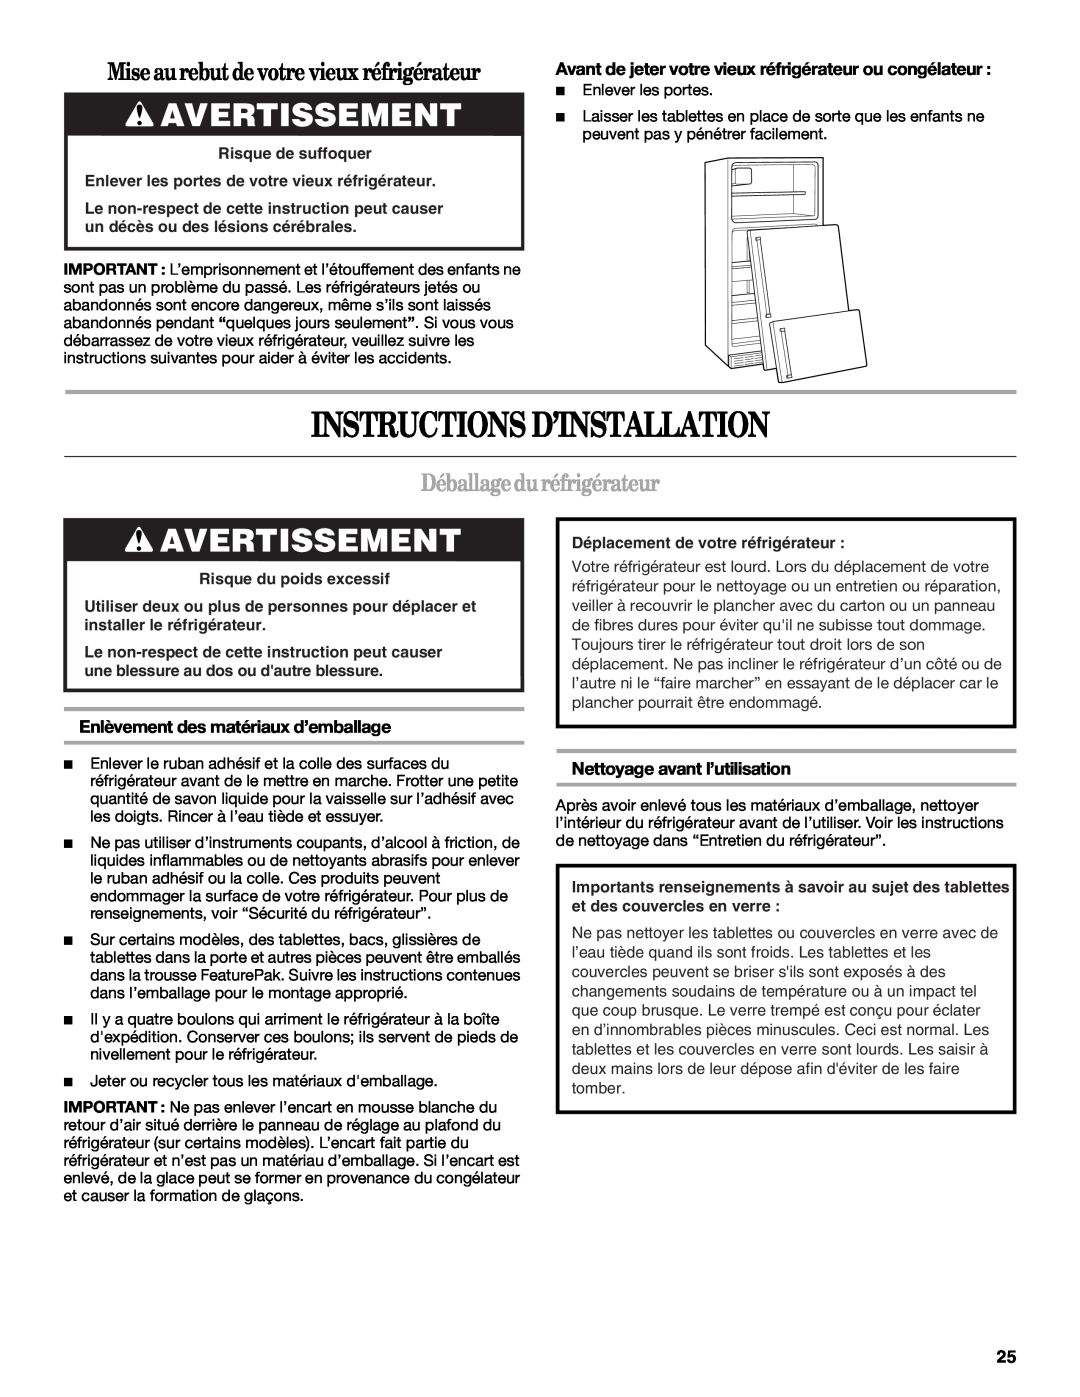 Whirlpool W10224664A Instructions D’Installation, Avertissement, Mise aurebut de votre vieux réfrigérateur 